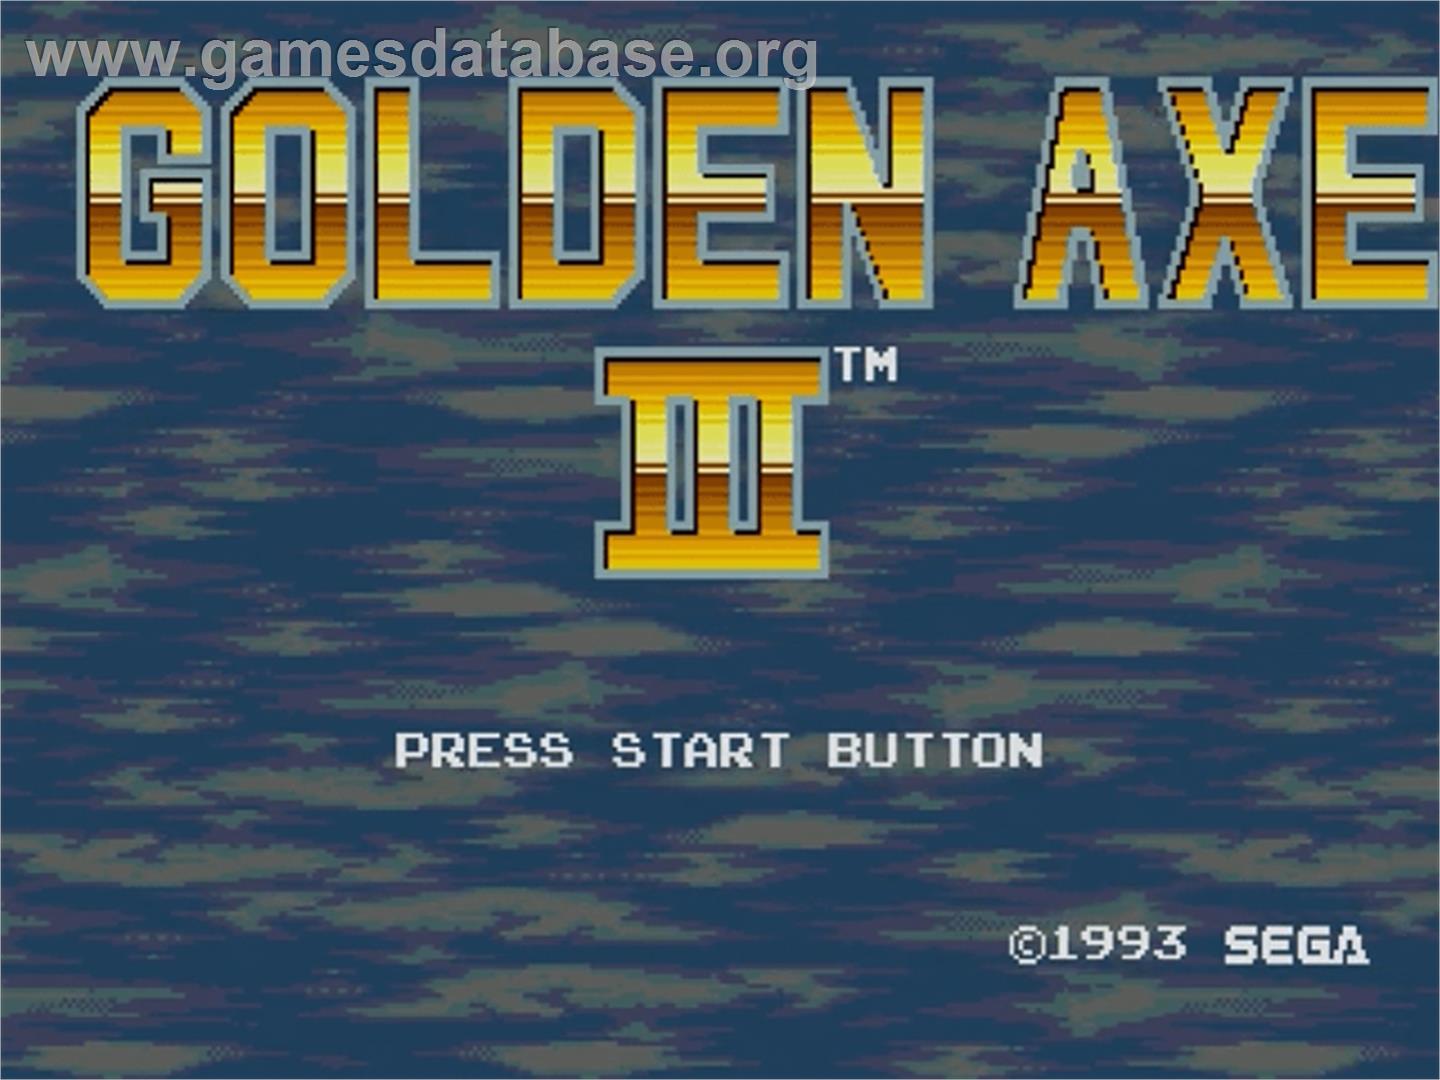 Golden Axe III - Sega Genesis - Artwork - Title Screen